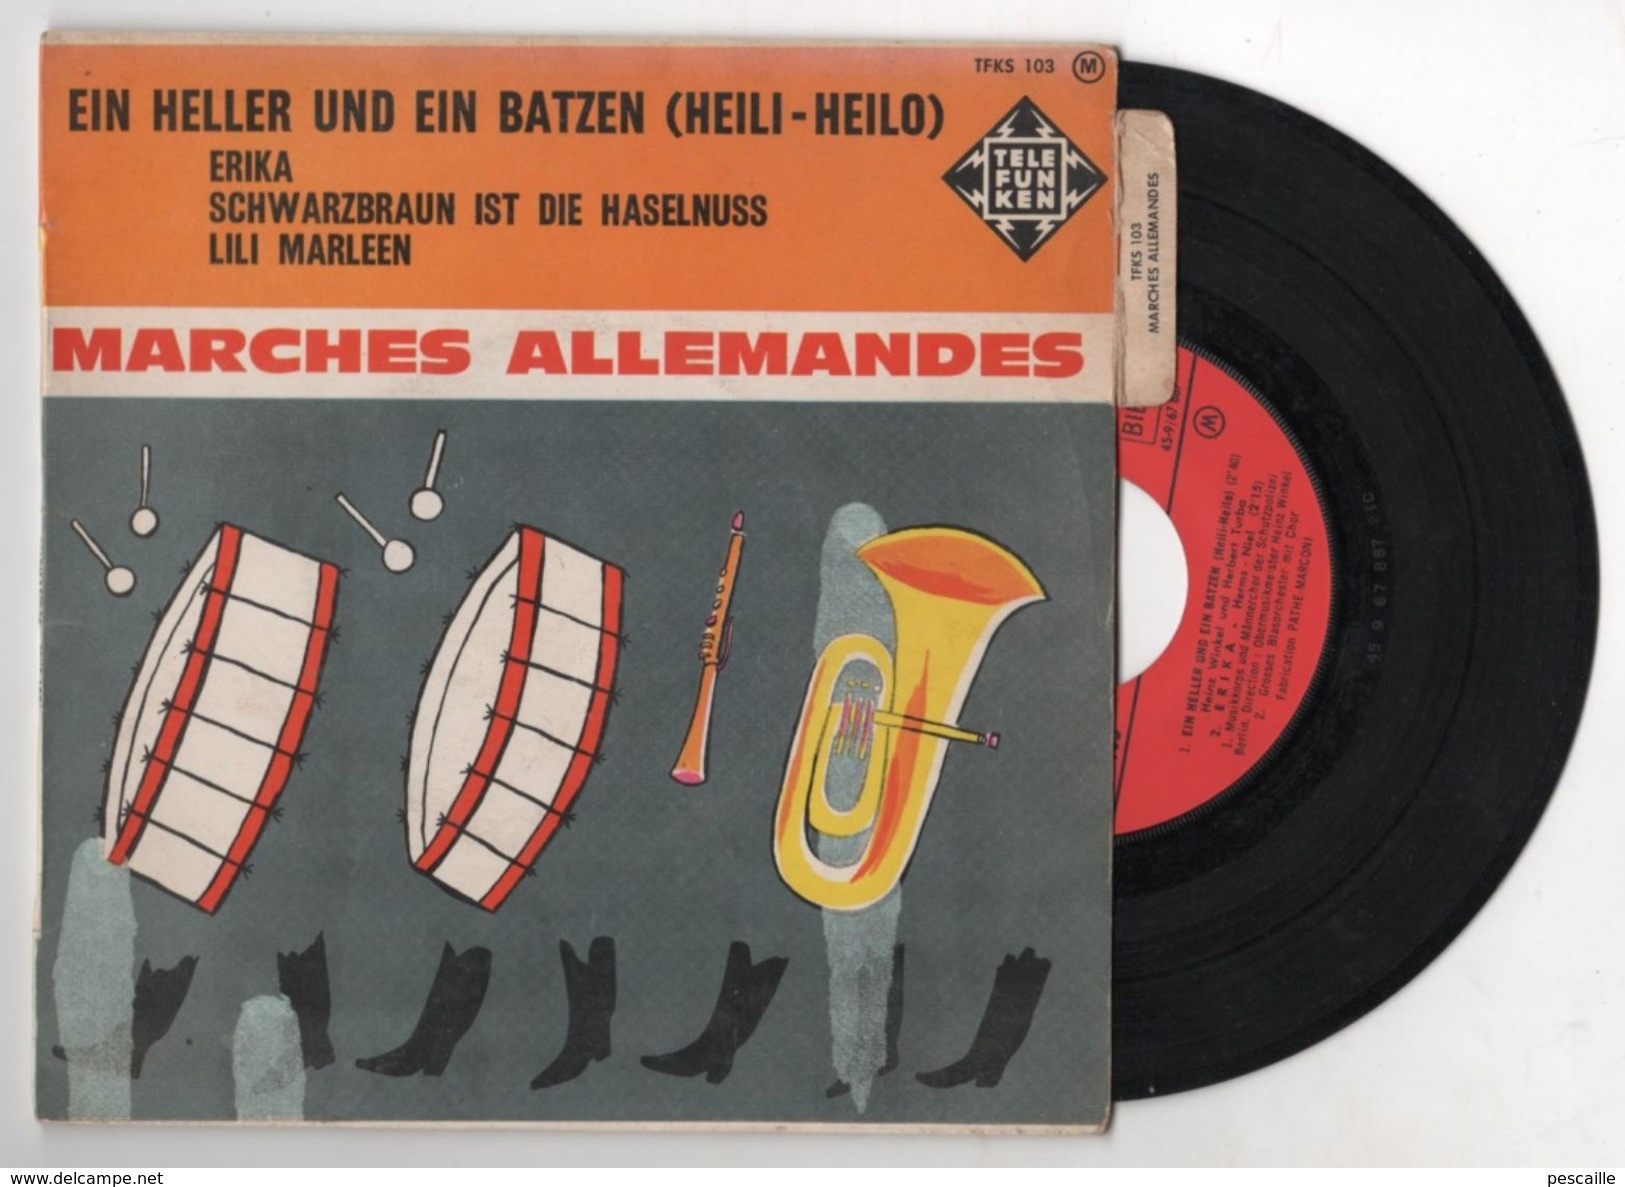 45 T MARCHES MILITAIRES ALLEMANDES WW2 - HEILI-HEILO - LILI MARLEEN - ERIKA - SCHWARZBRAUN IST DIE HASELNUSS - Sonstige - Deutsche Musik